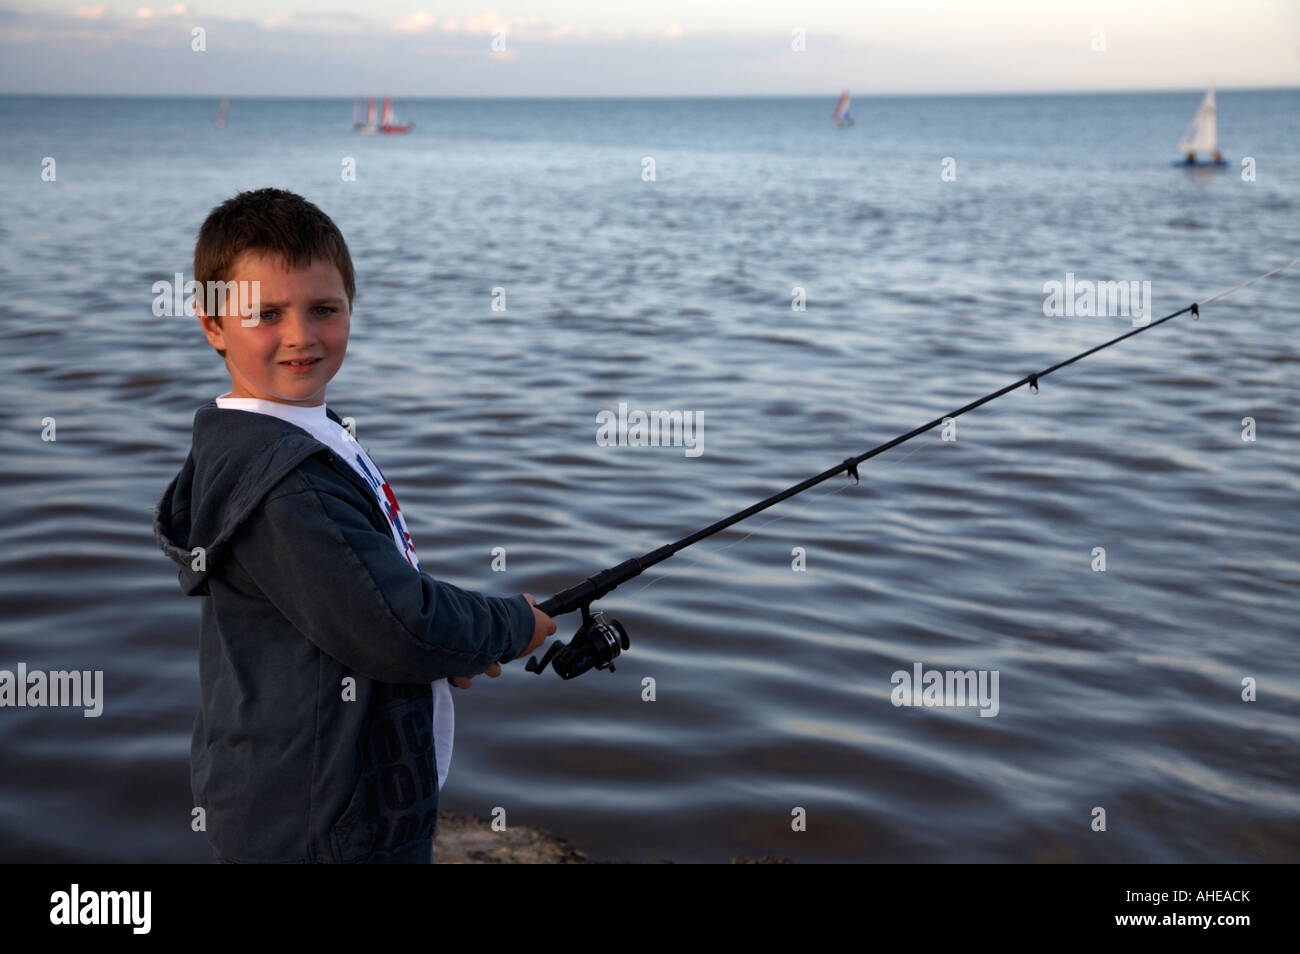 Joven muchacho de siete años en un muelle de pesca girado hacia la cámara en el condado de Wexford, República de Irlanda Foto de stock